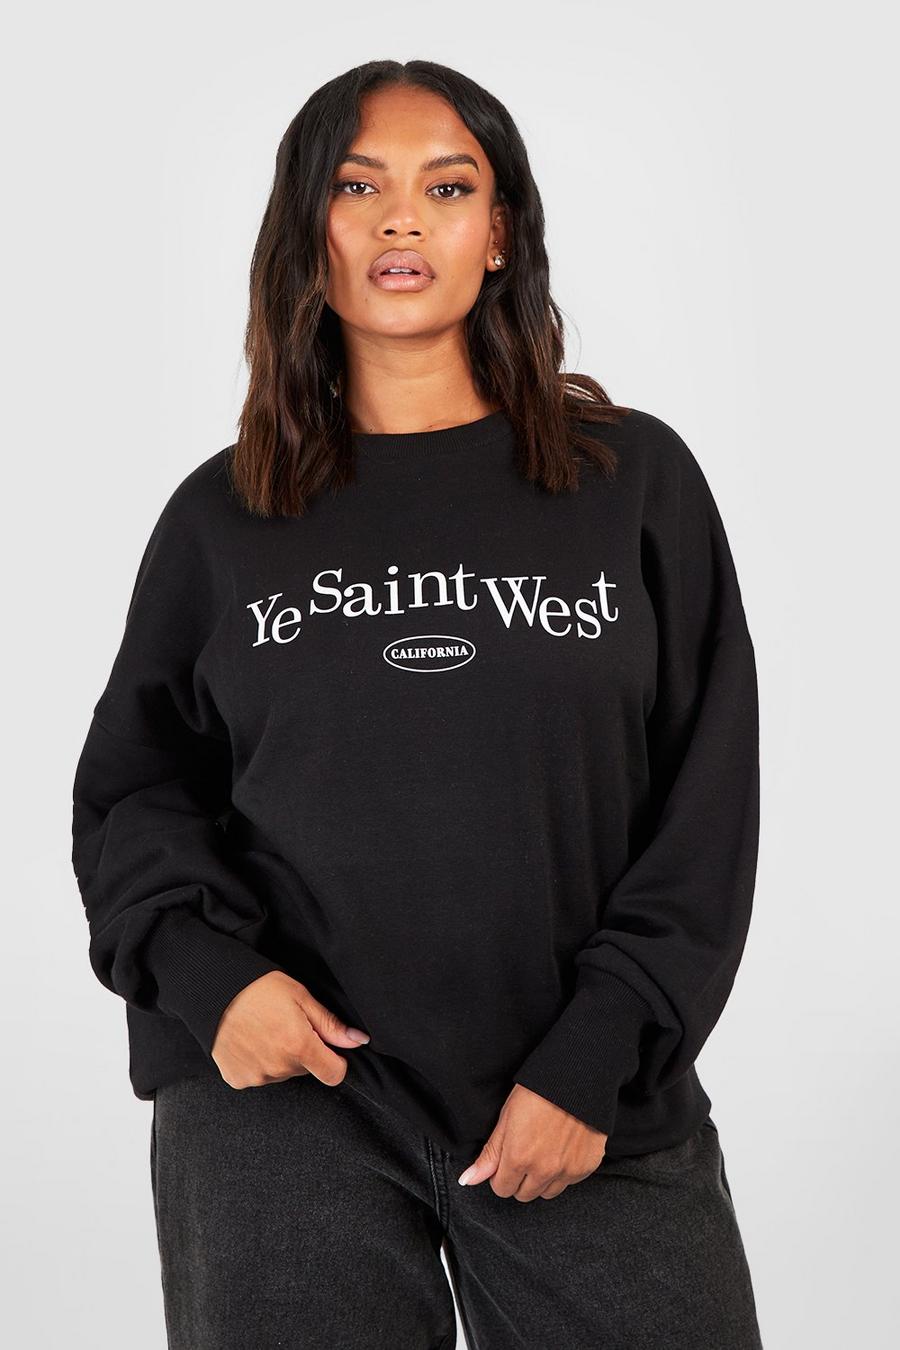 Plus Sweatshirt mit Ye Saint West Print, Schwarz